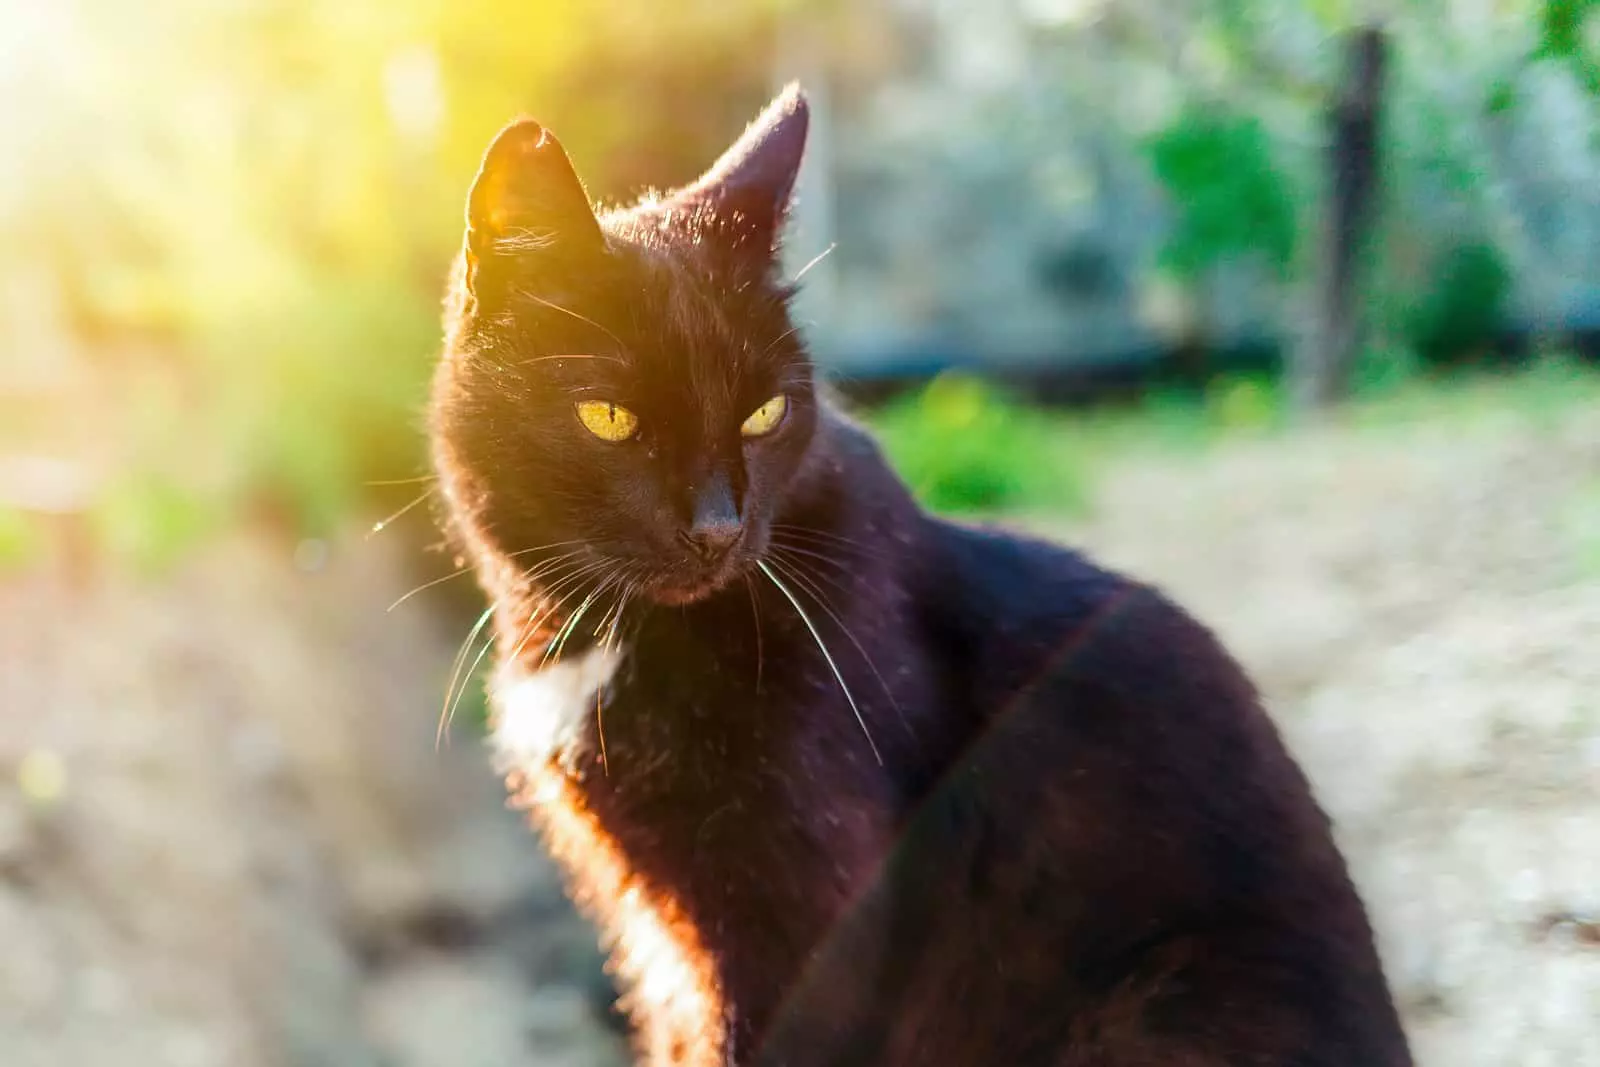 Proč černé kočky rezaví?